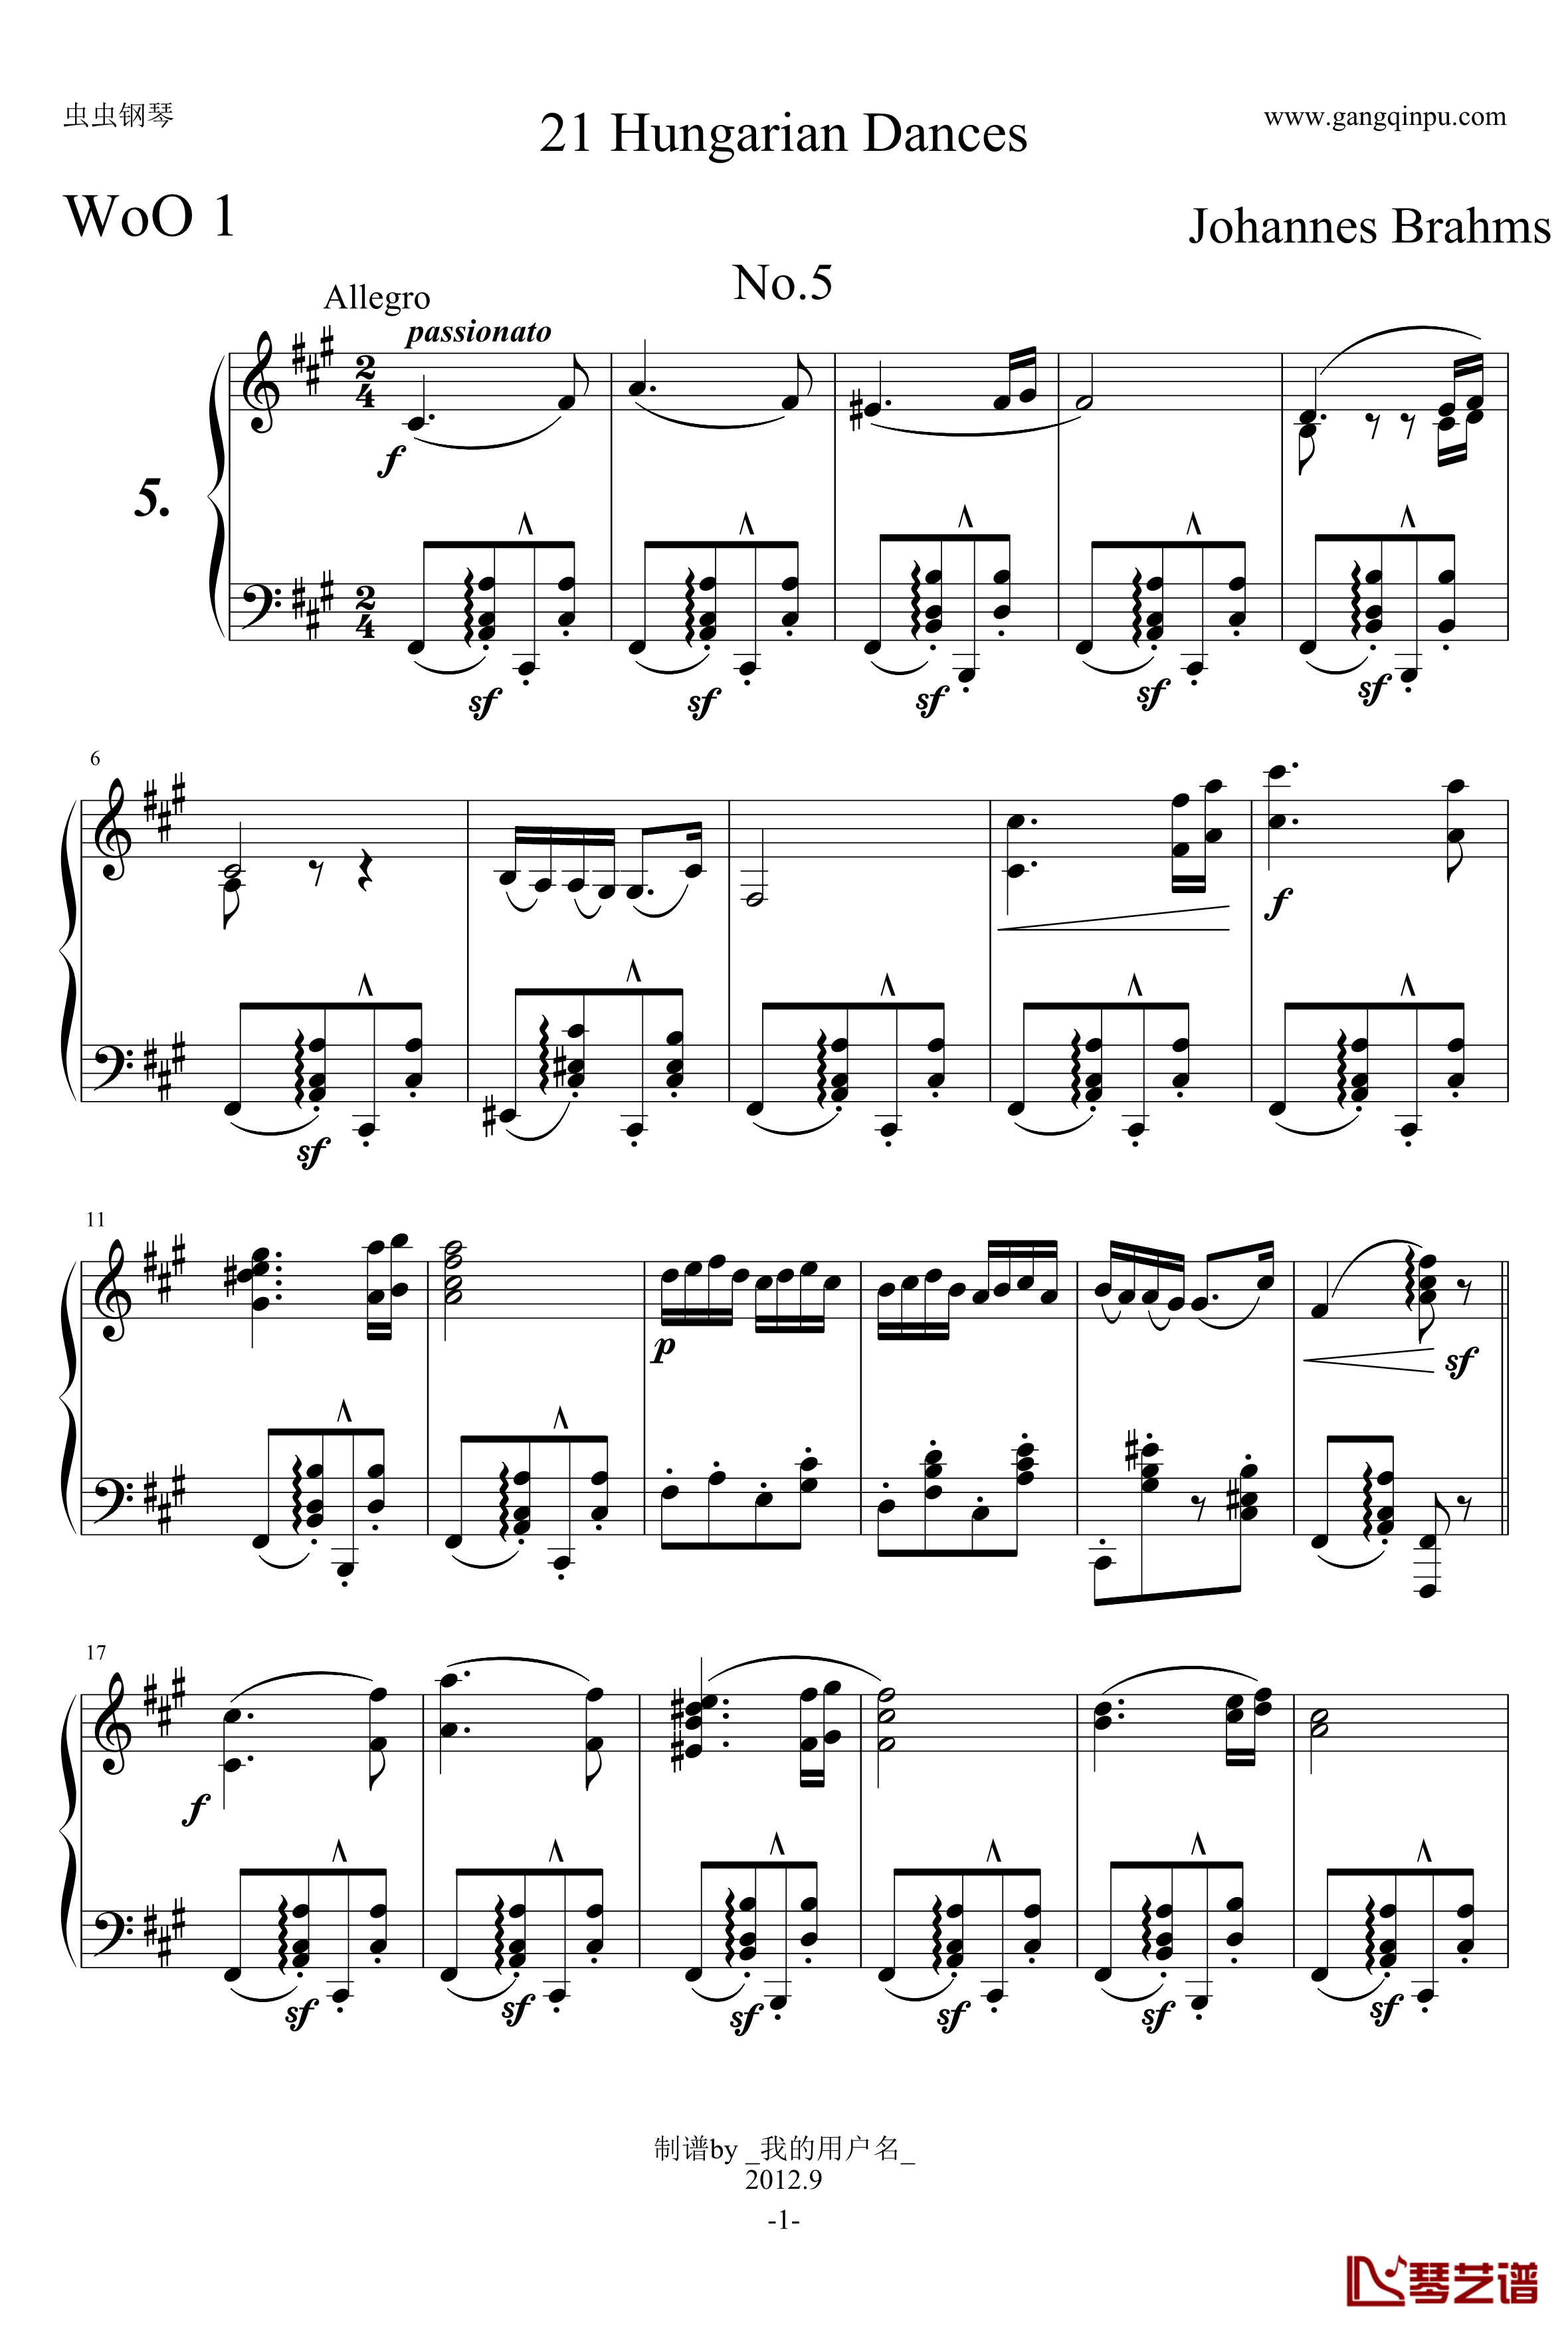 第五号匈牙利舞曲钢琴谱-原谱-勃拉姆斯-Brahms1